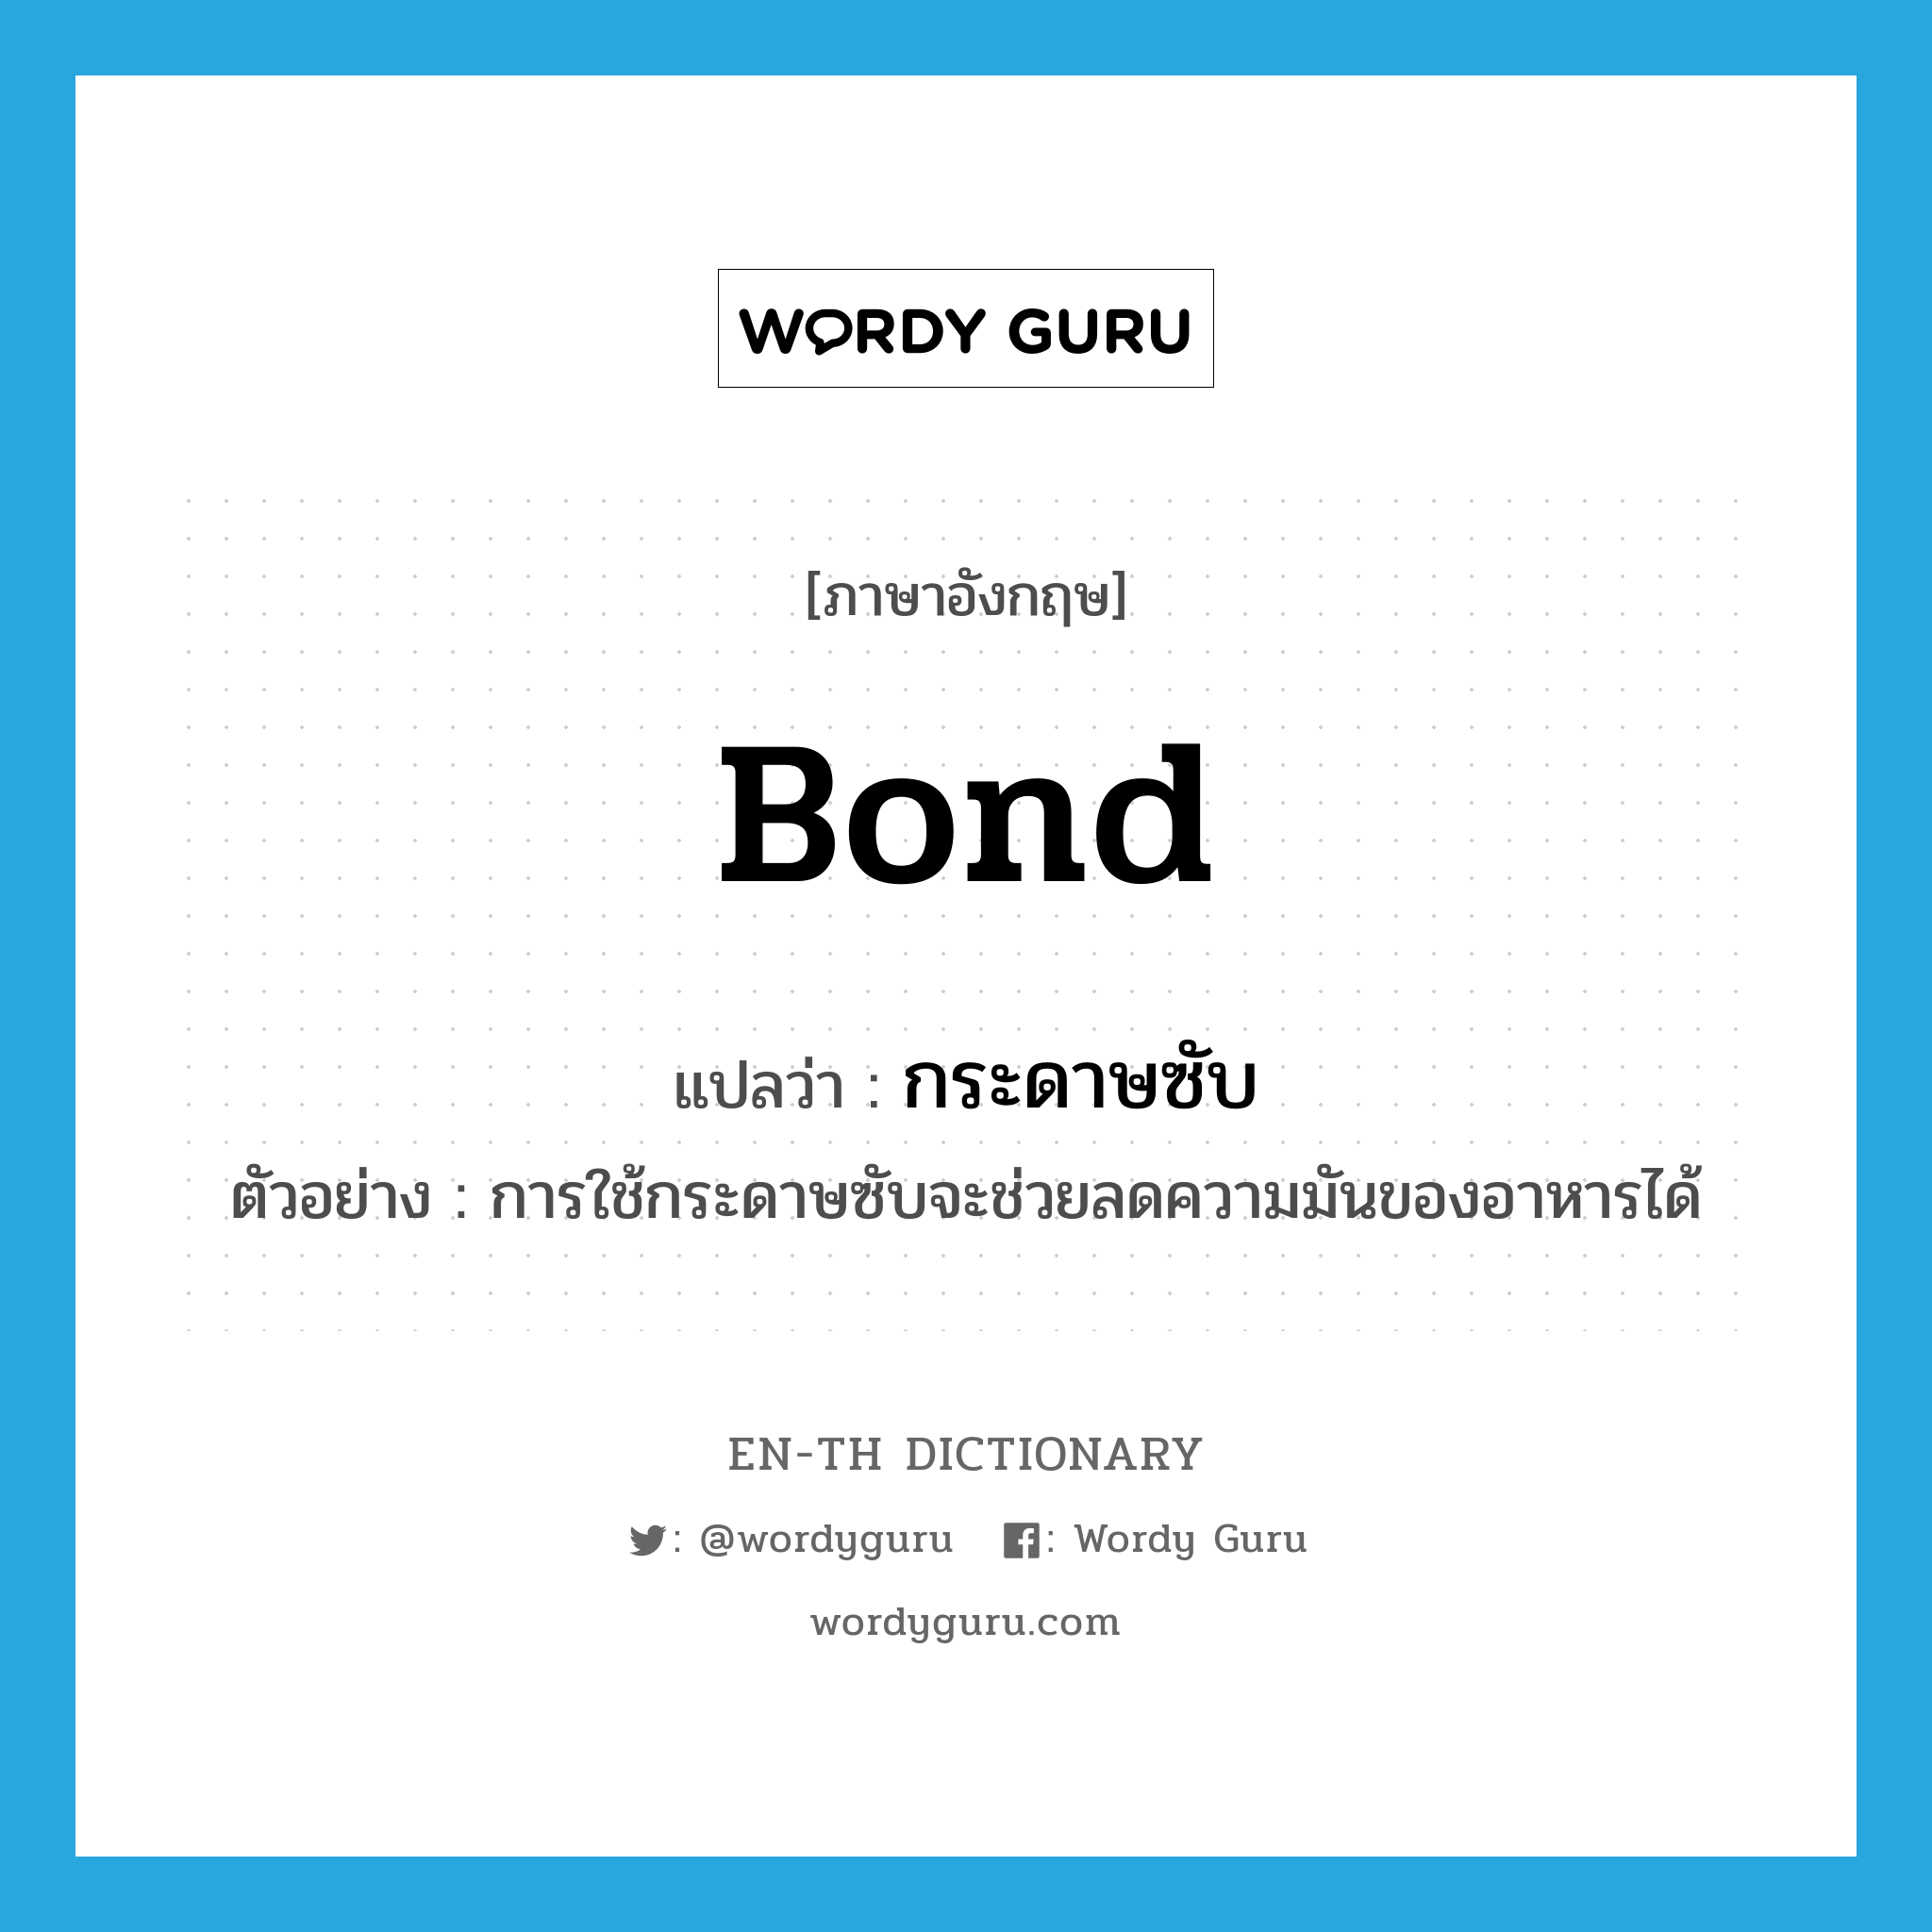 bond แปลว่า?, คำศัพท์ภาษาอังกฤษ bond แปลว่า กระดาษซับ ประเภท N ตัวอย่าง การใช้กระดาษซับจะช่วยลดความมันของอาหารได้ หมวด N